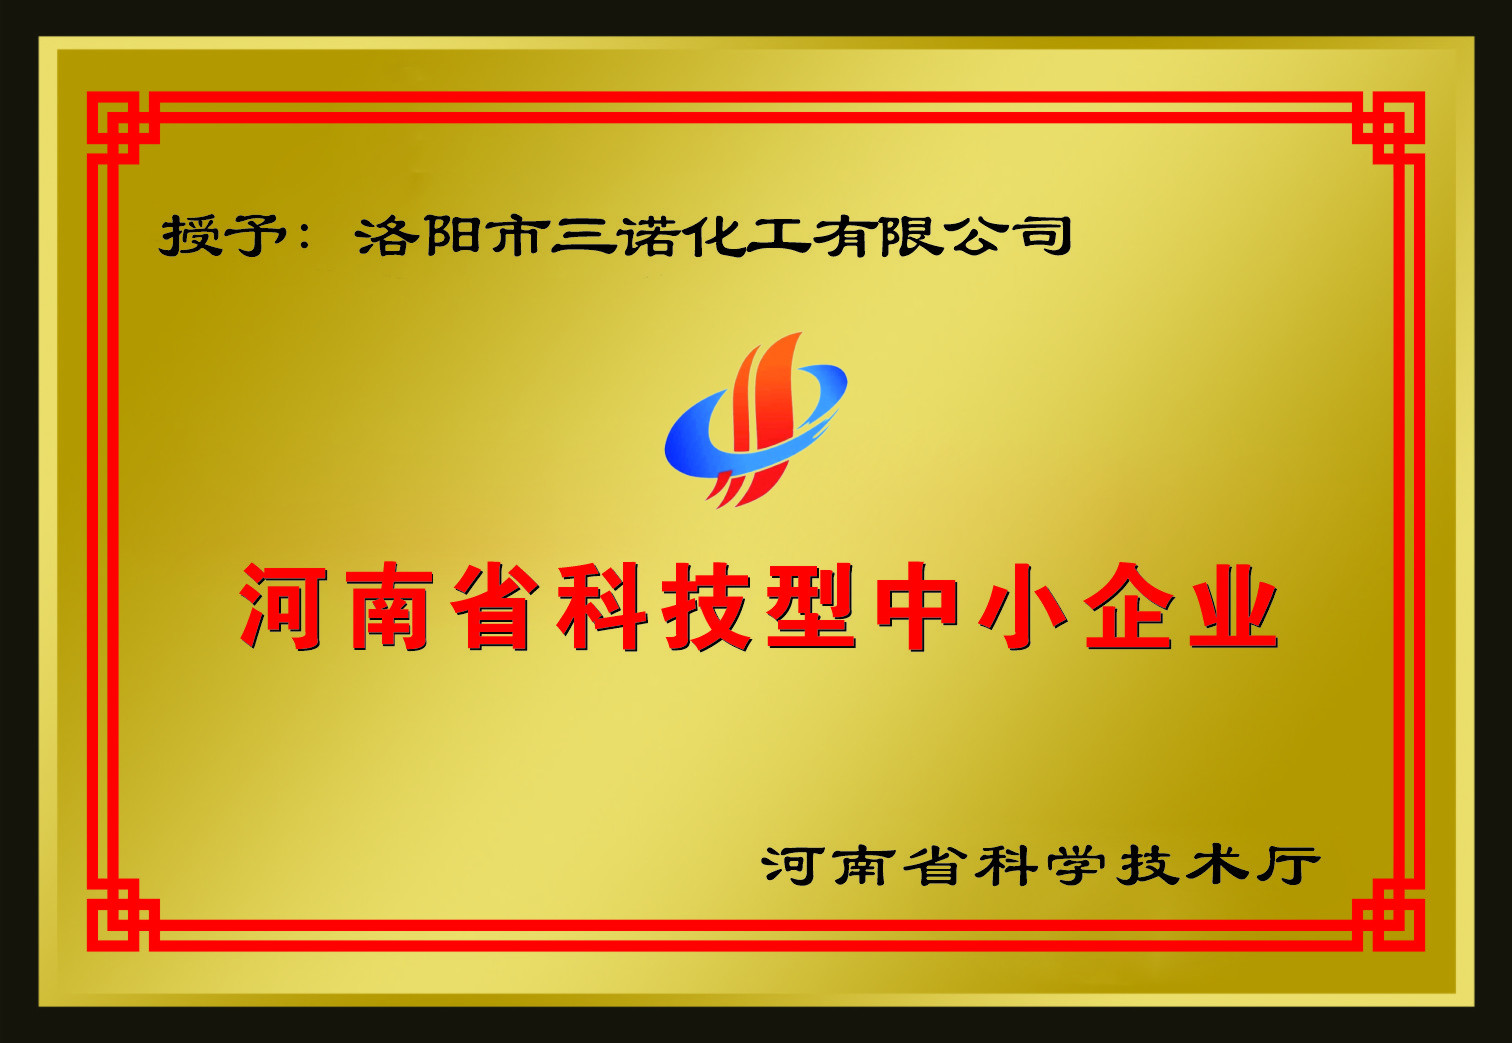 河南省科技型中小企業